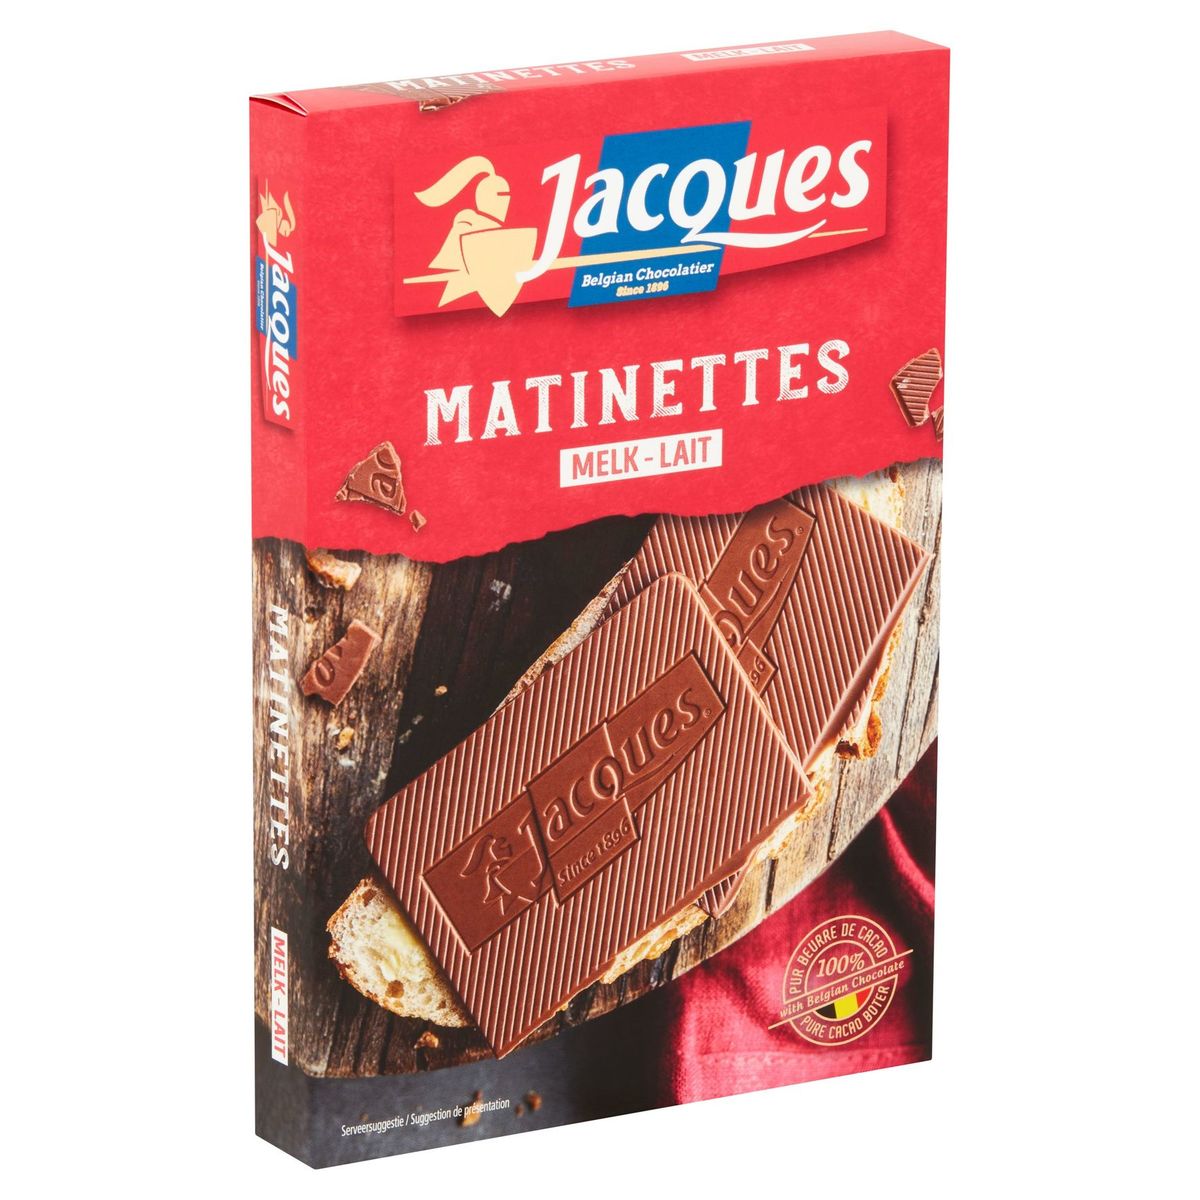 Jacques Matinettes Lait 128 g